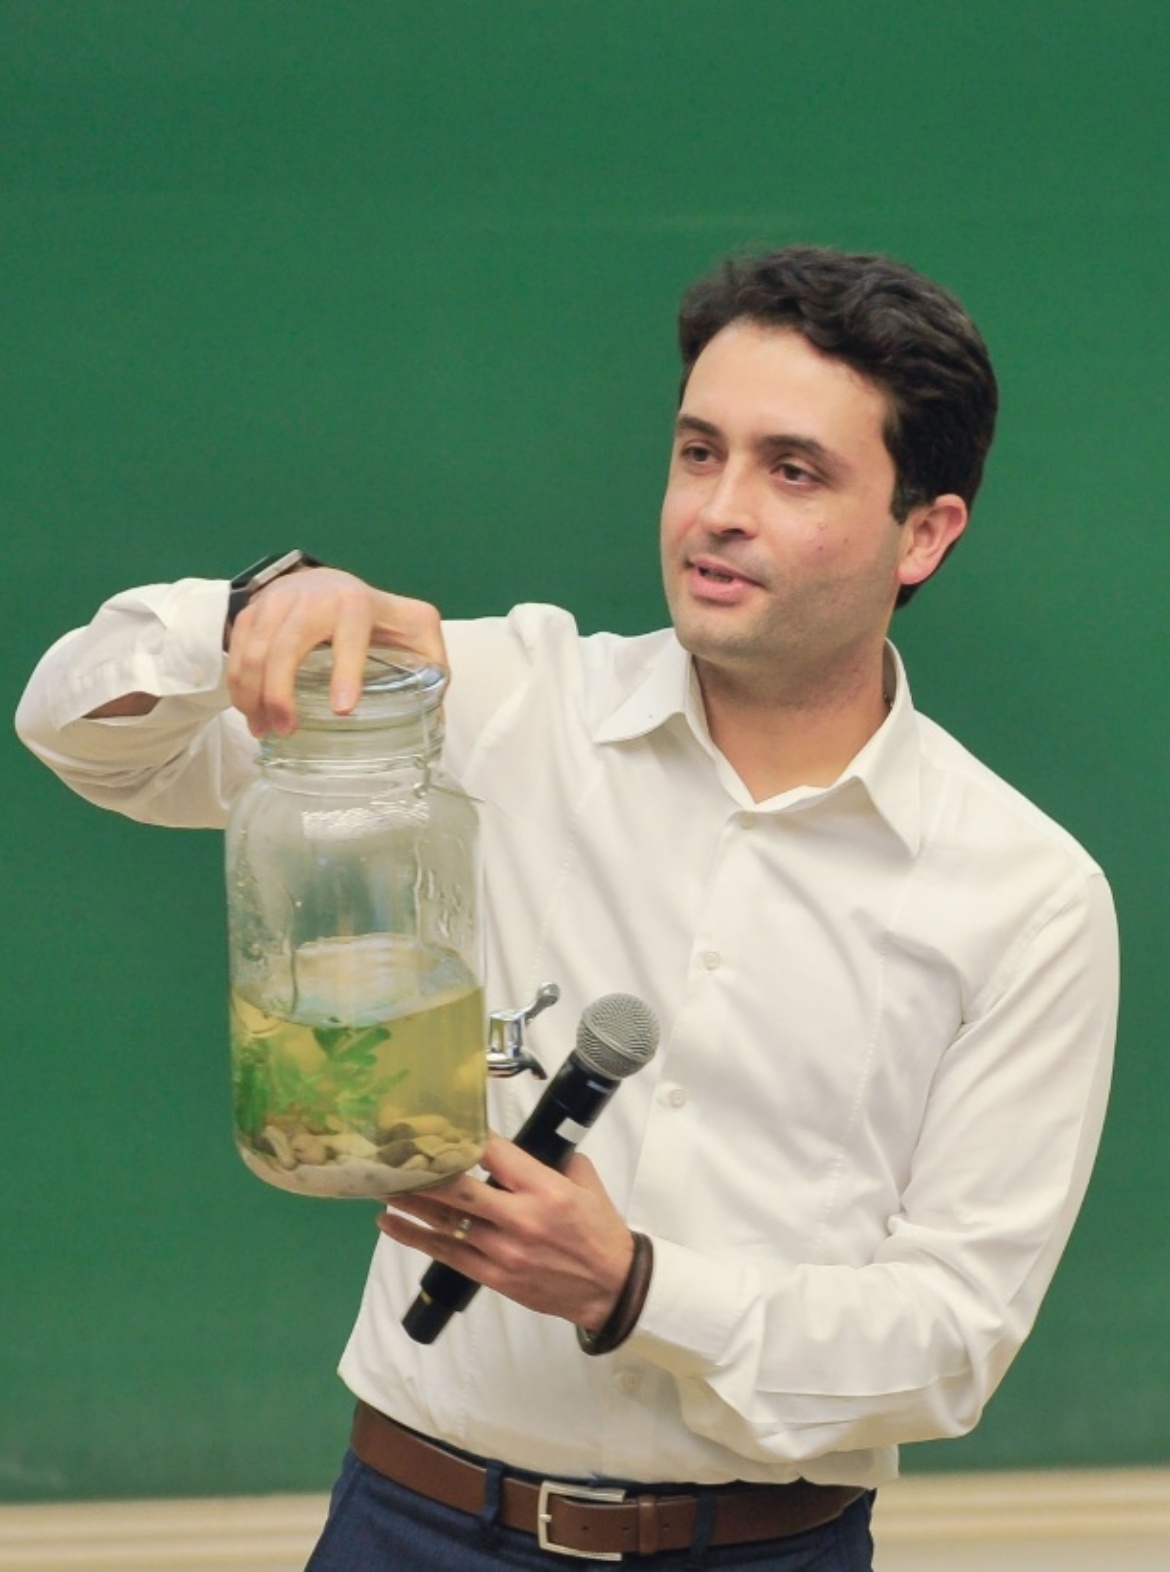 Abbildung von Dr. Tourian mit einem Behälter voll Wasser